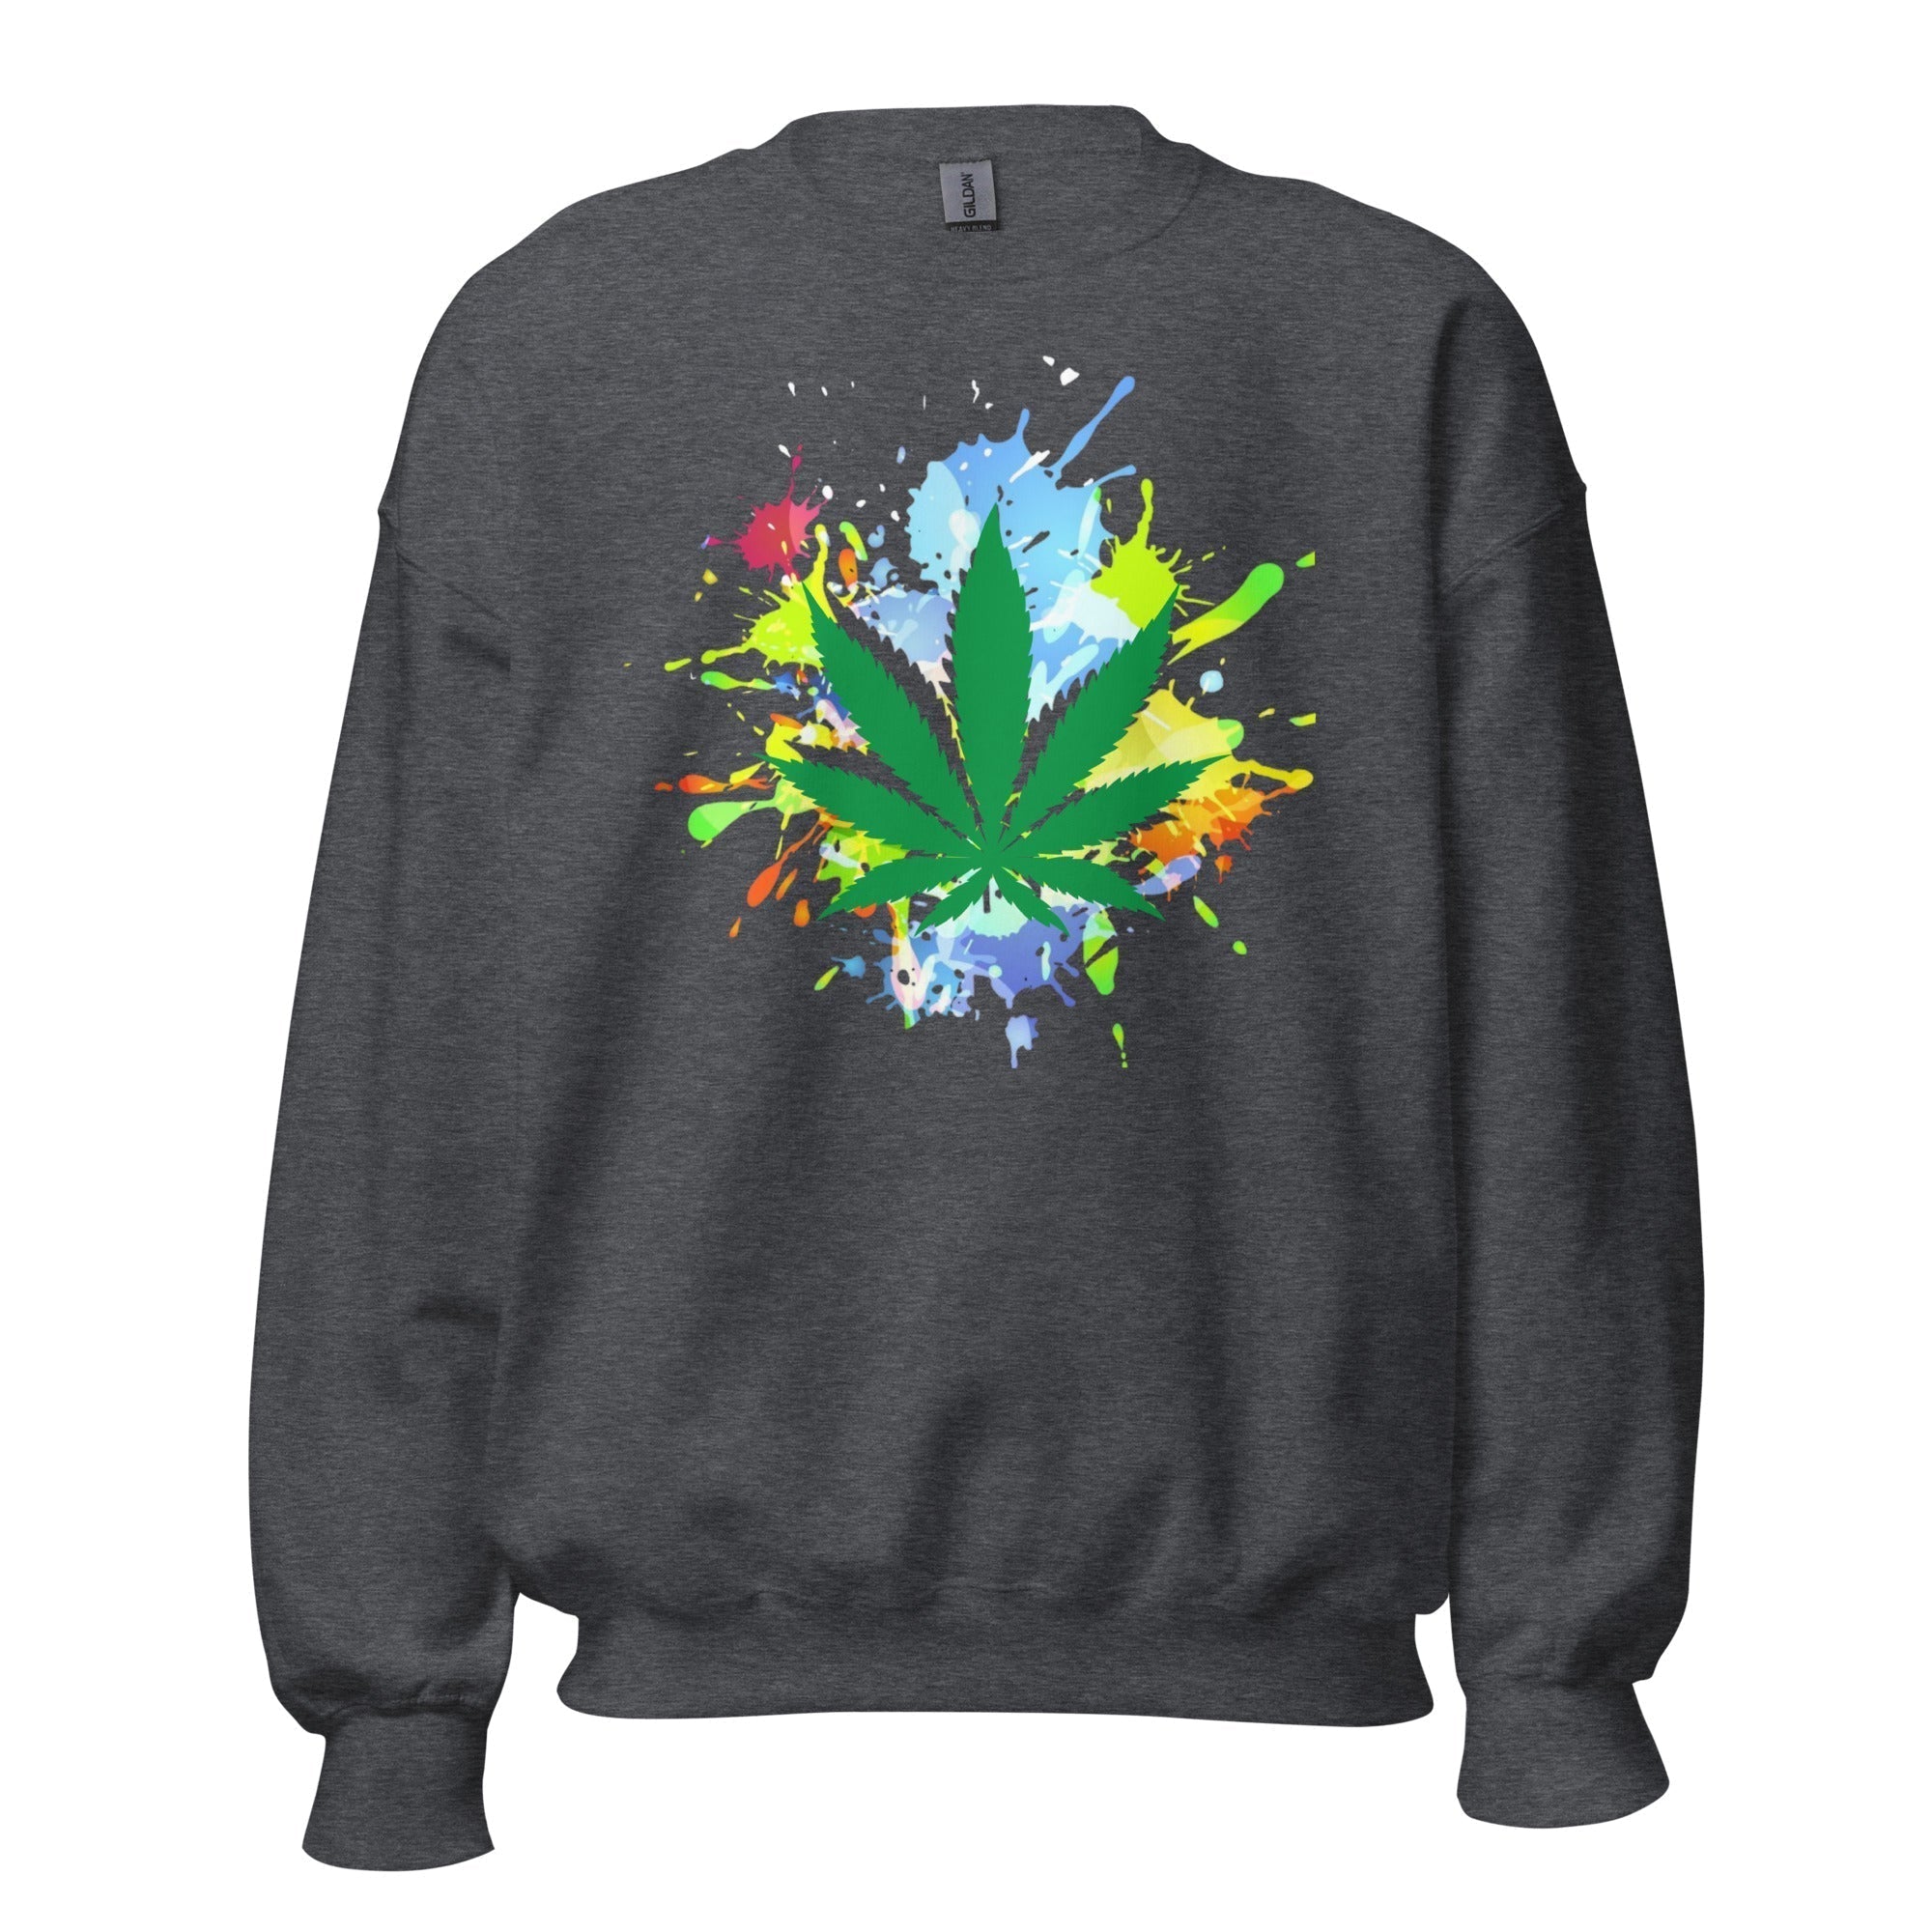 Unisex Crew Neck Sweatshirt - Marijuana - GRAPHIC T-SHIRTS